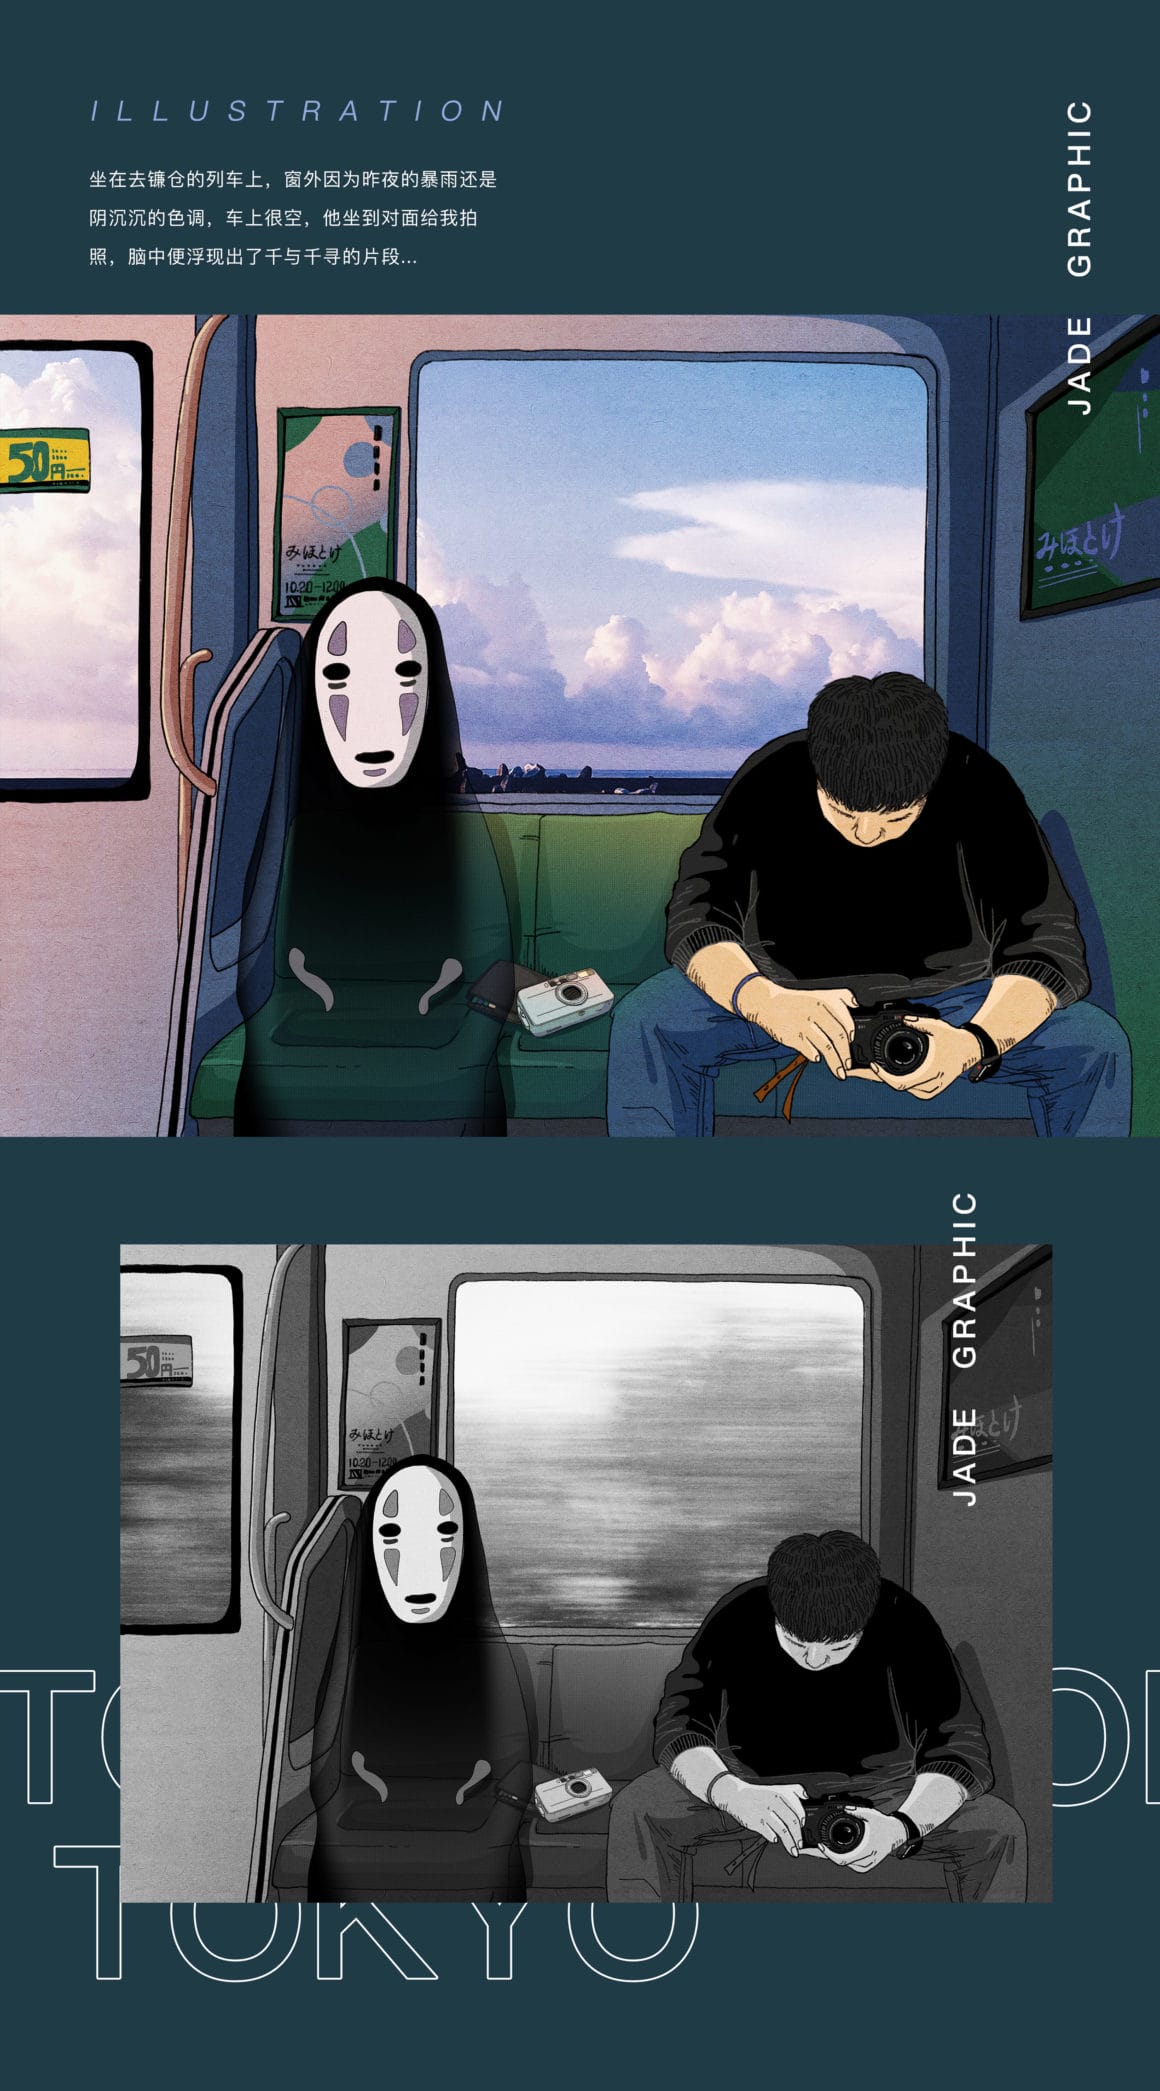 Esprit japonais dans un train avec un homme lambda